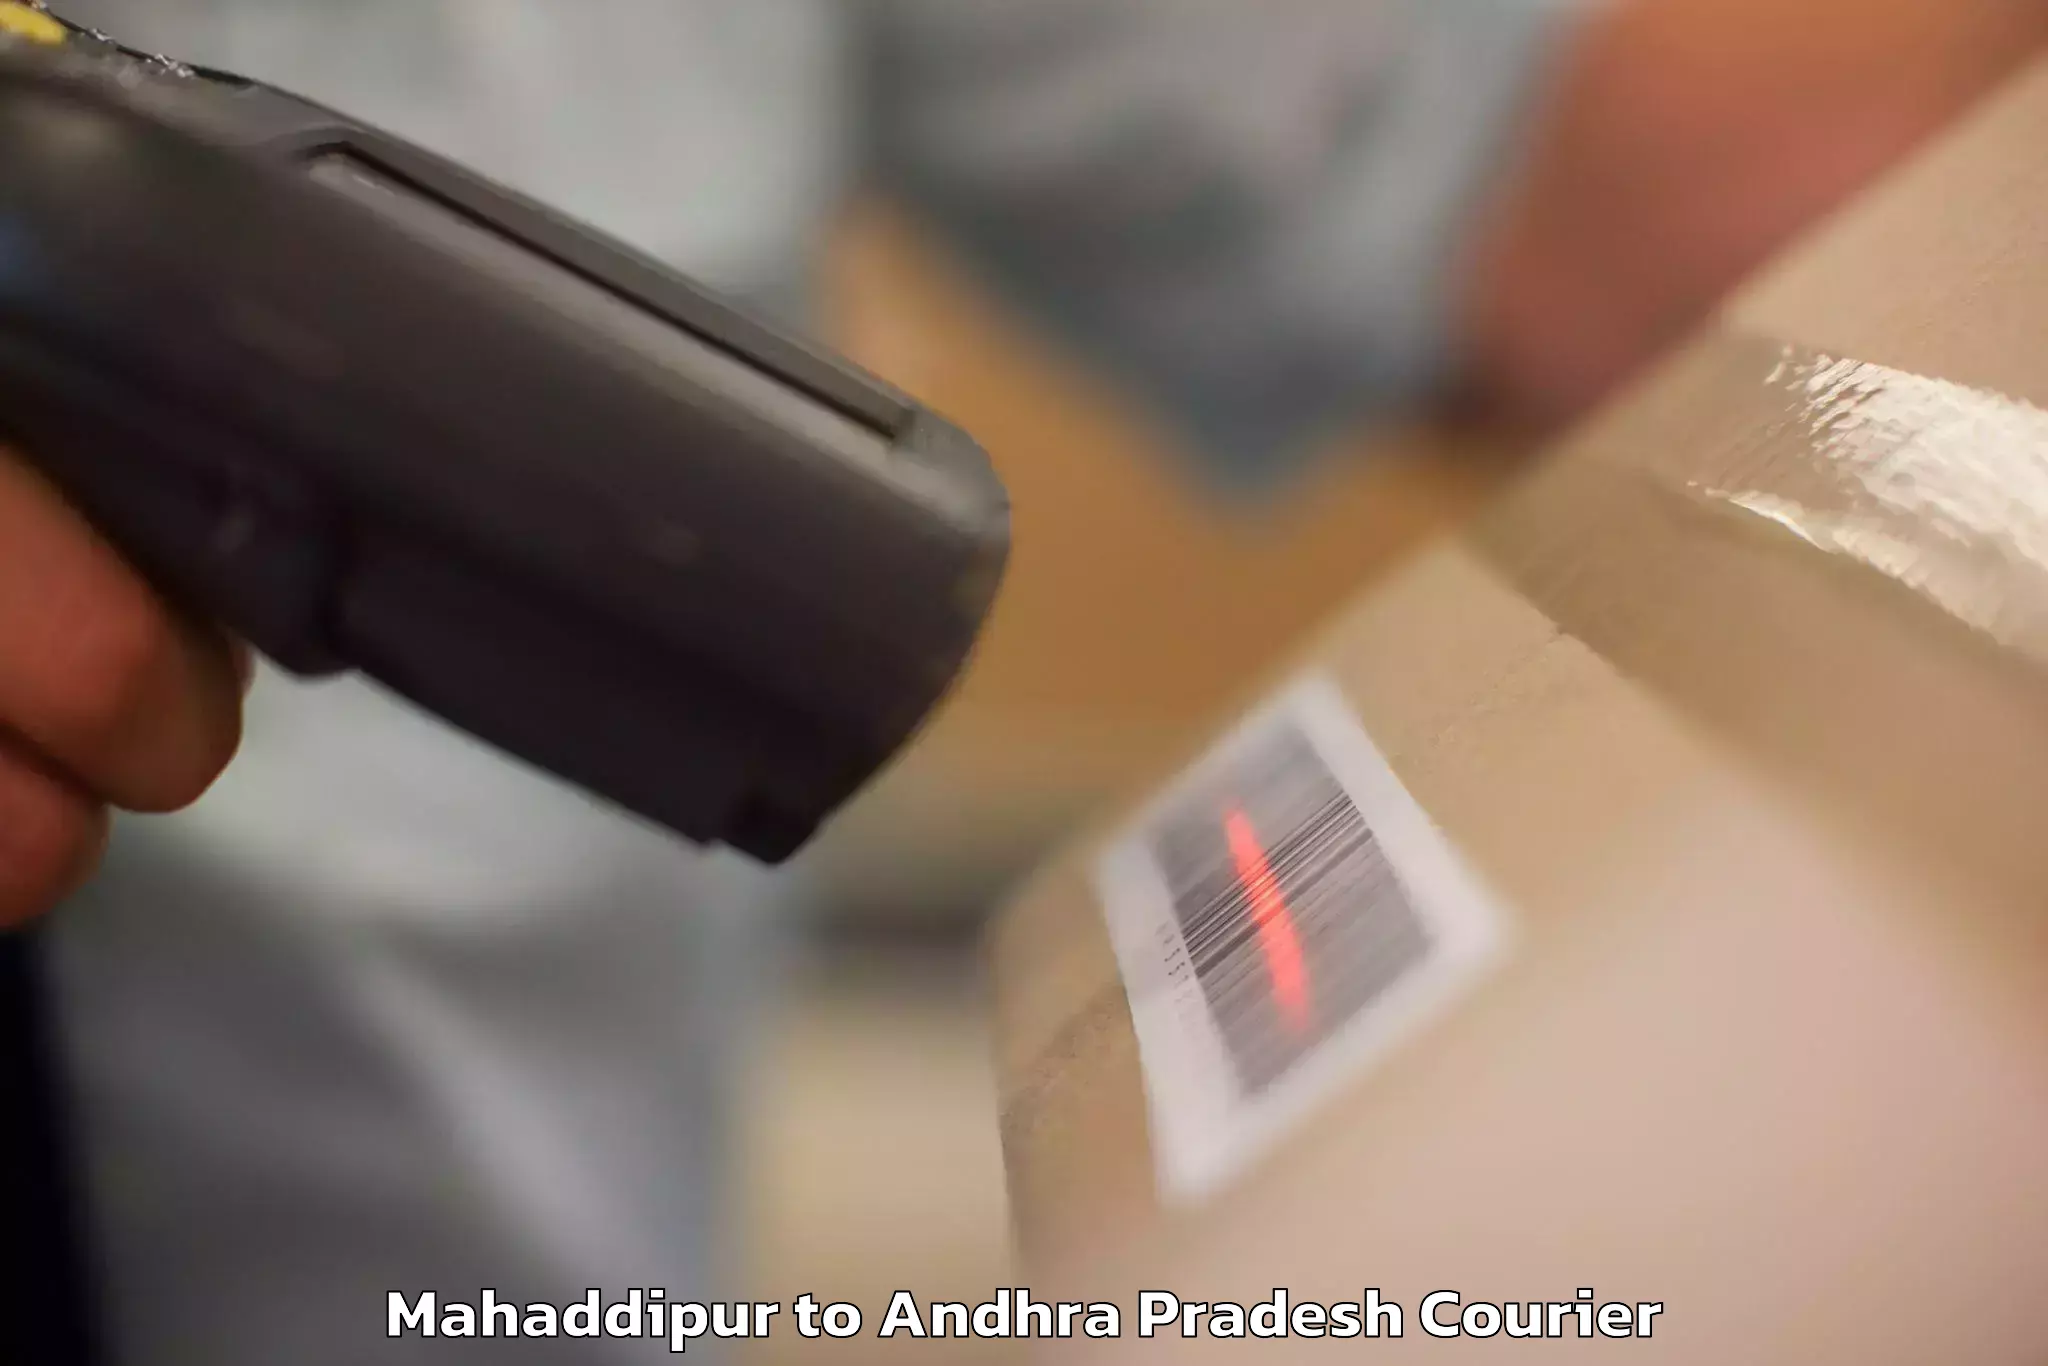 High-quality baggage shipment Mahaddipur to Andhra Pradesh